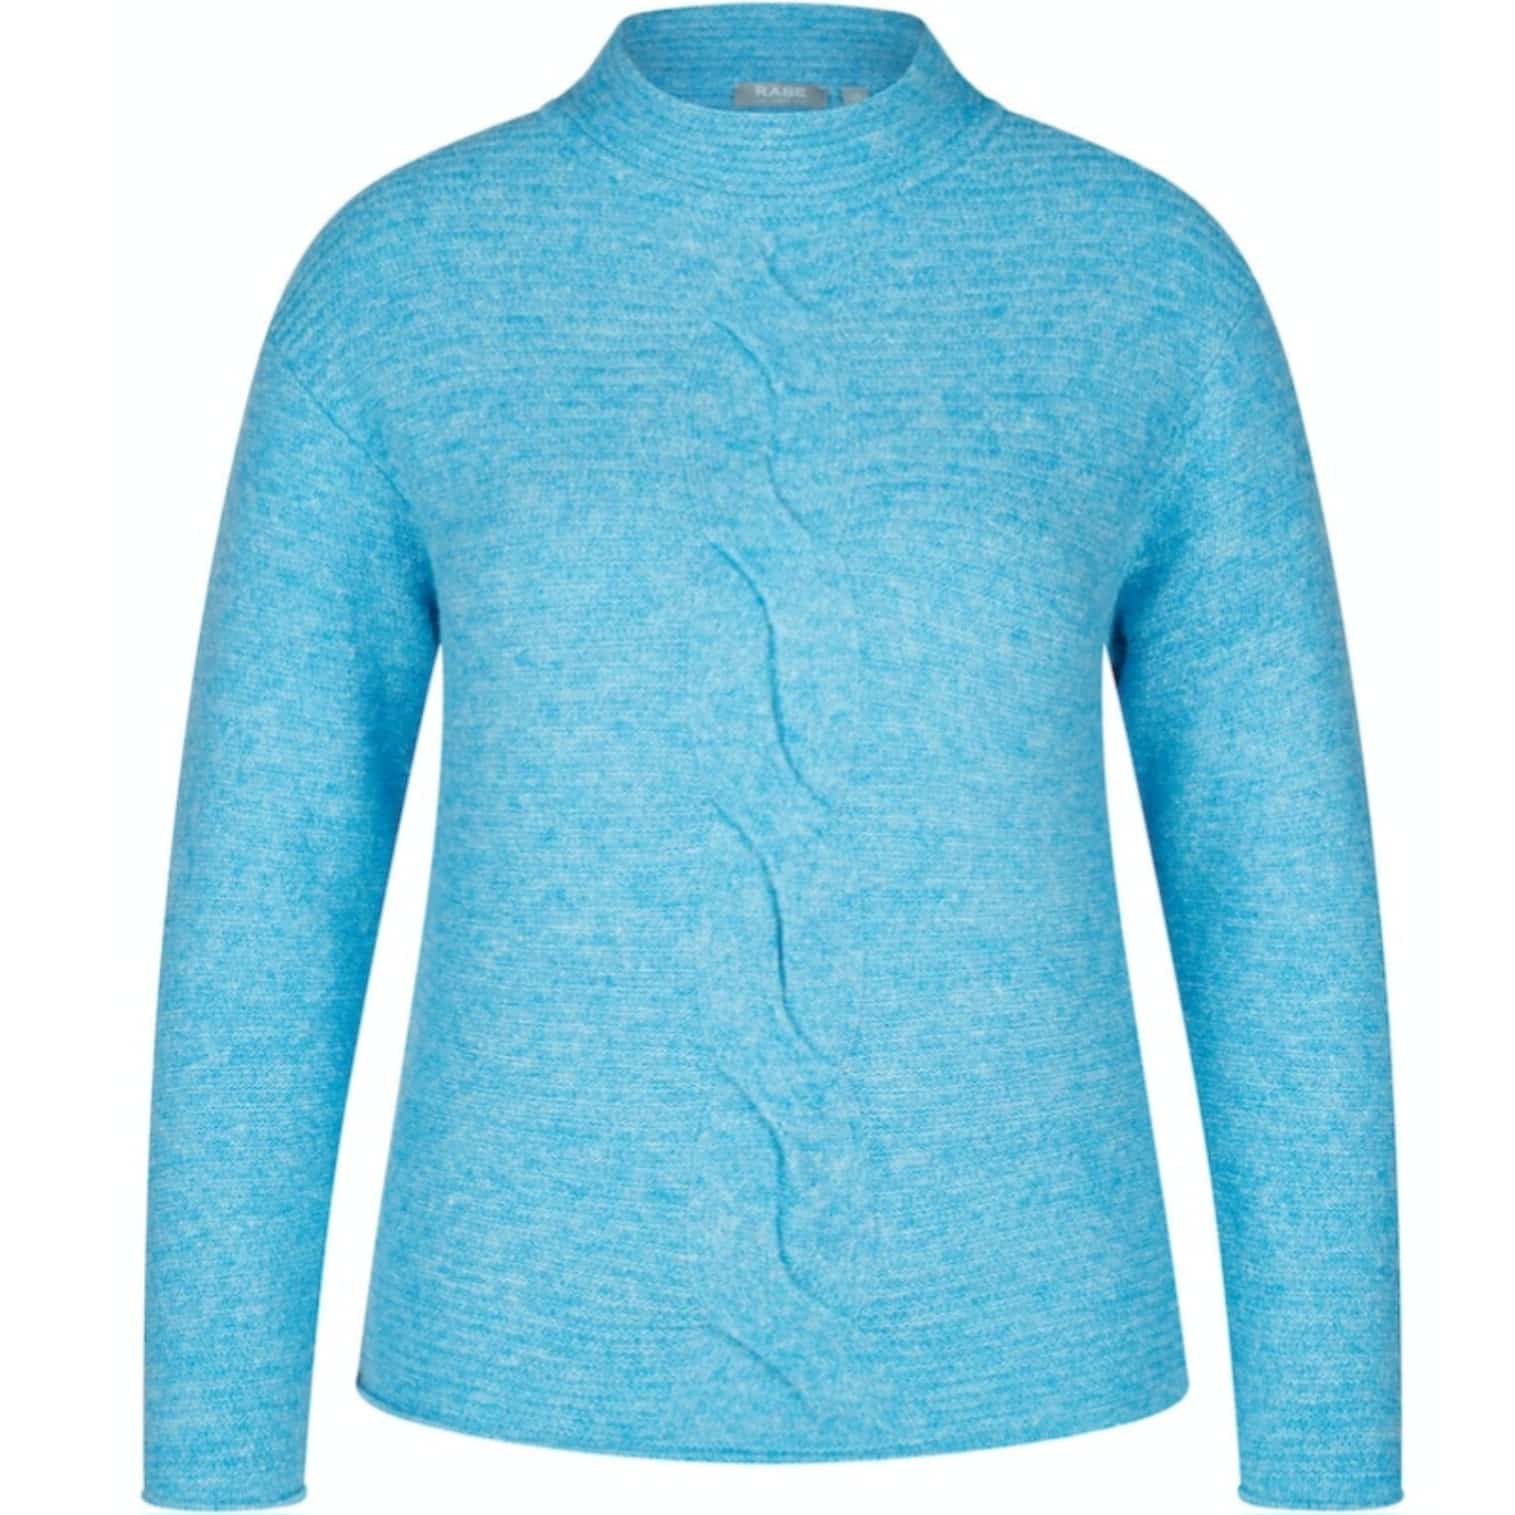 Kuschelig warmer Pullover in türkis von Rabe Moden bei Mode Sabine Lemke in Winnenden im Remstal im Modegeschäft oder online shoppen